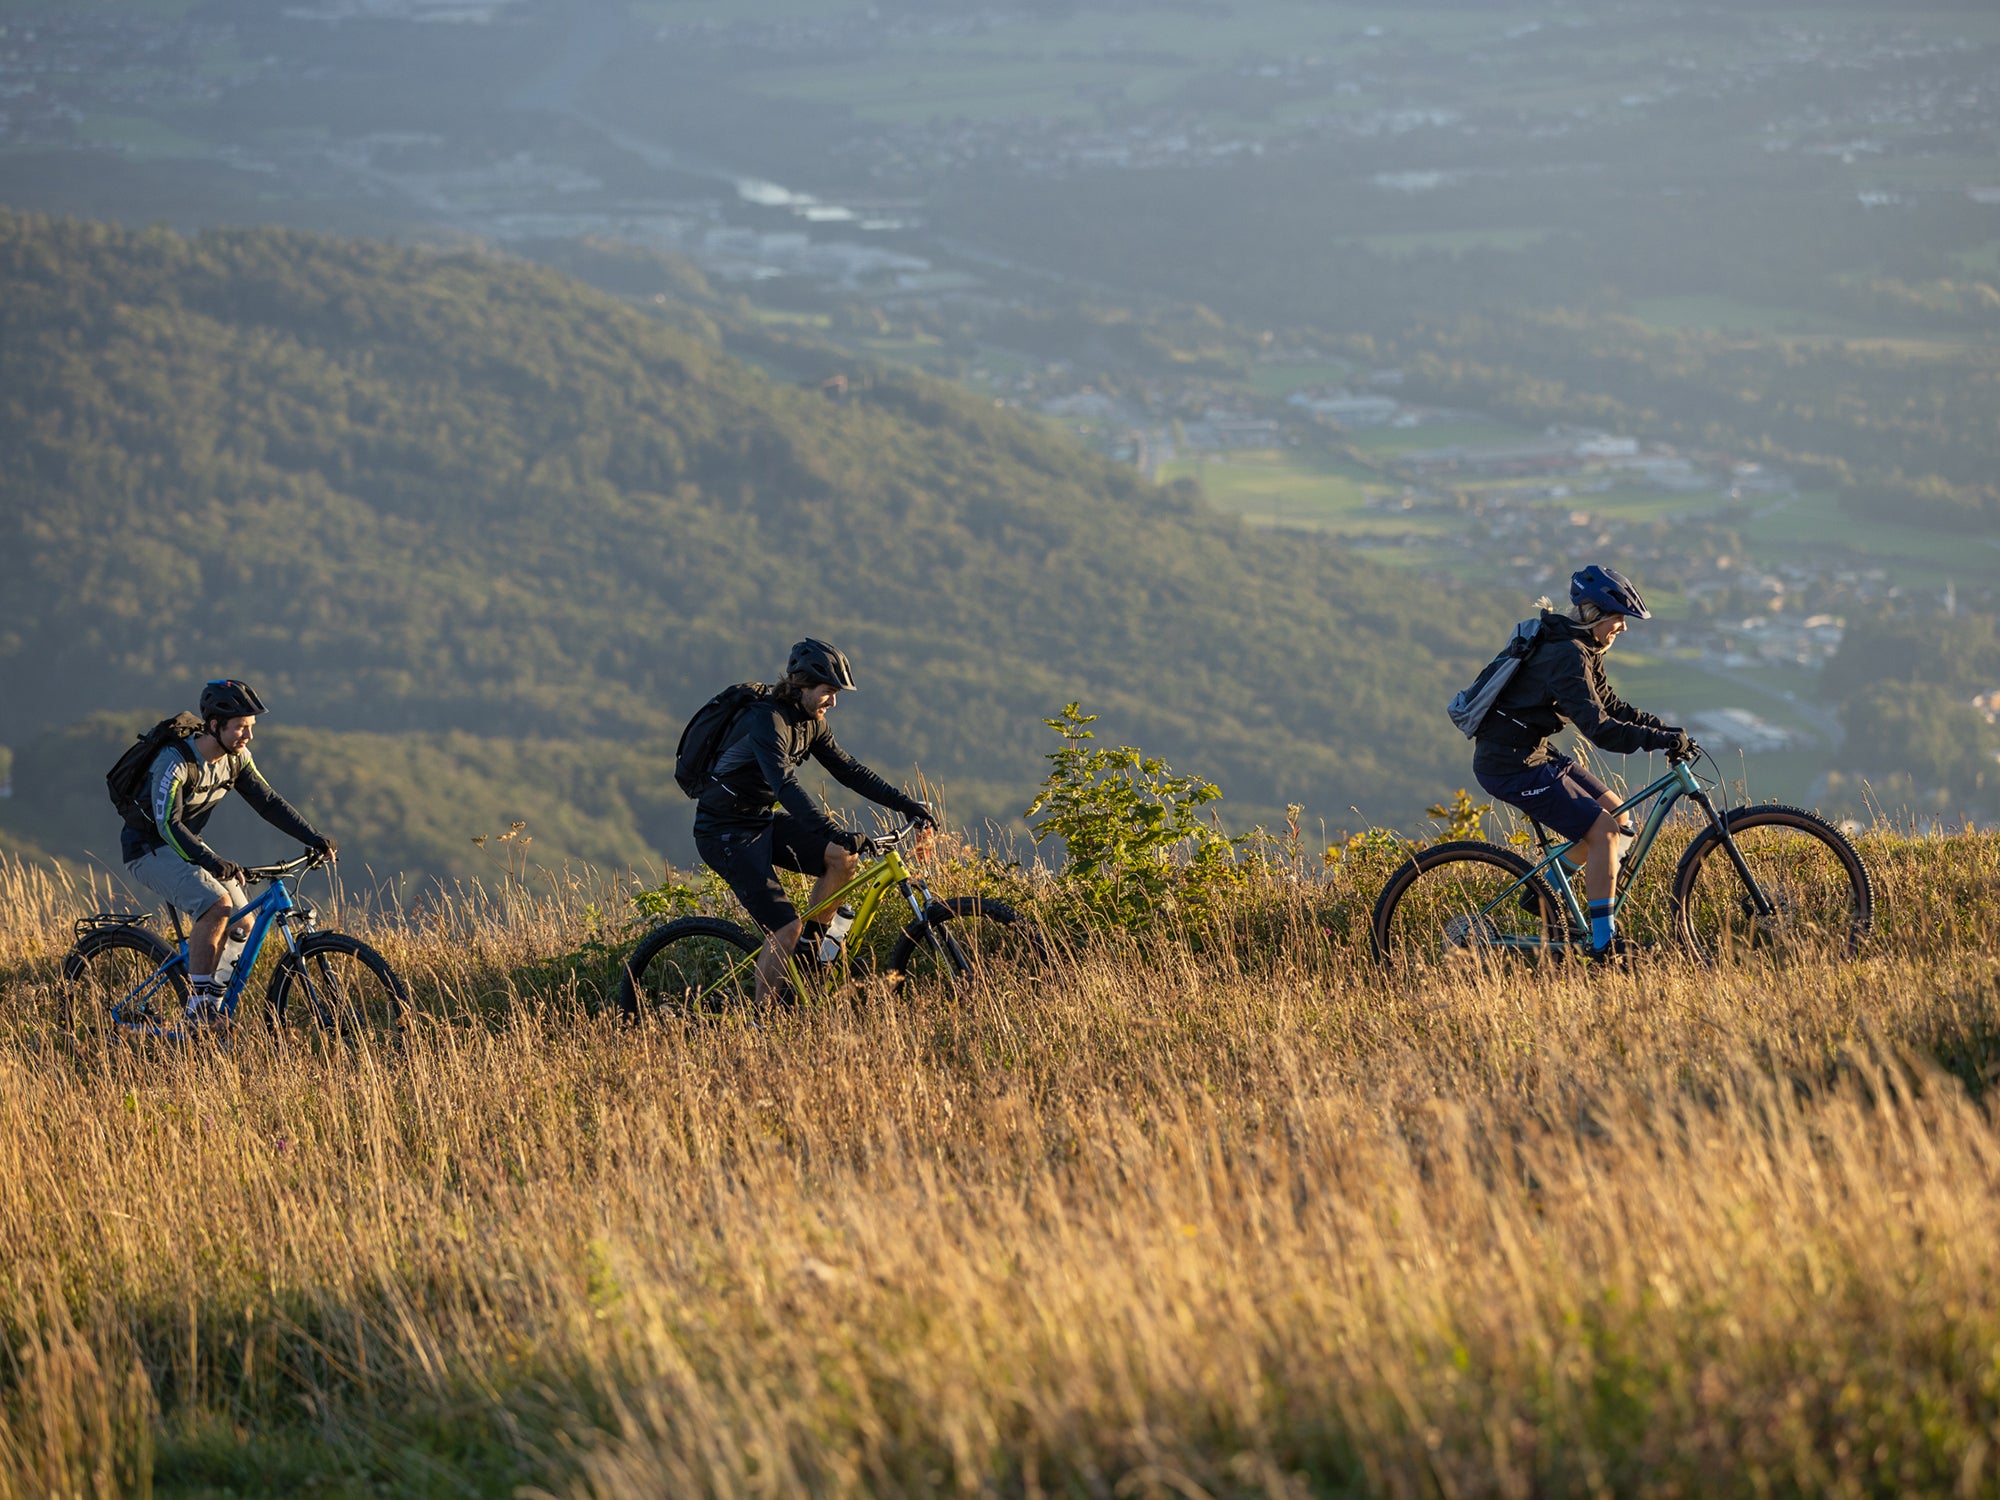 Drei Menschen in sportlicher Kleidung und Fahrradhelmen fahren auf ihren Cube Fahrrädern auf einem Naturpfad in einer hügeligen Landschaft.